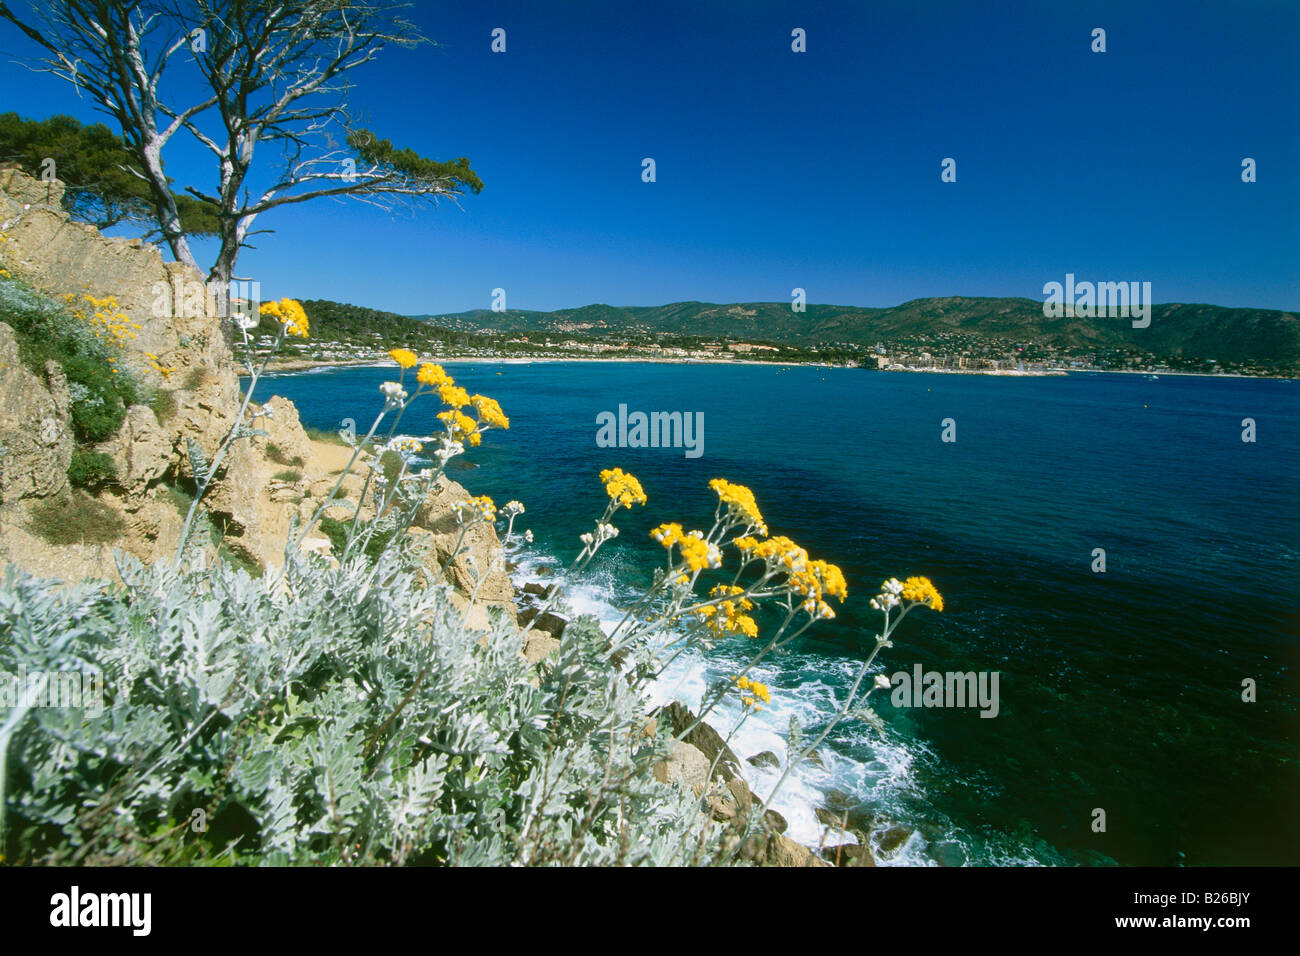 El paisaje costero y de la bahía, Baie du Gaou cerca de Le Lavandou, Cote d'Azur, Provenza, Francia Foto de stock